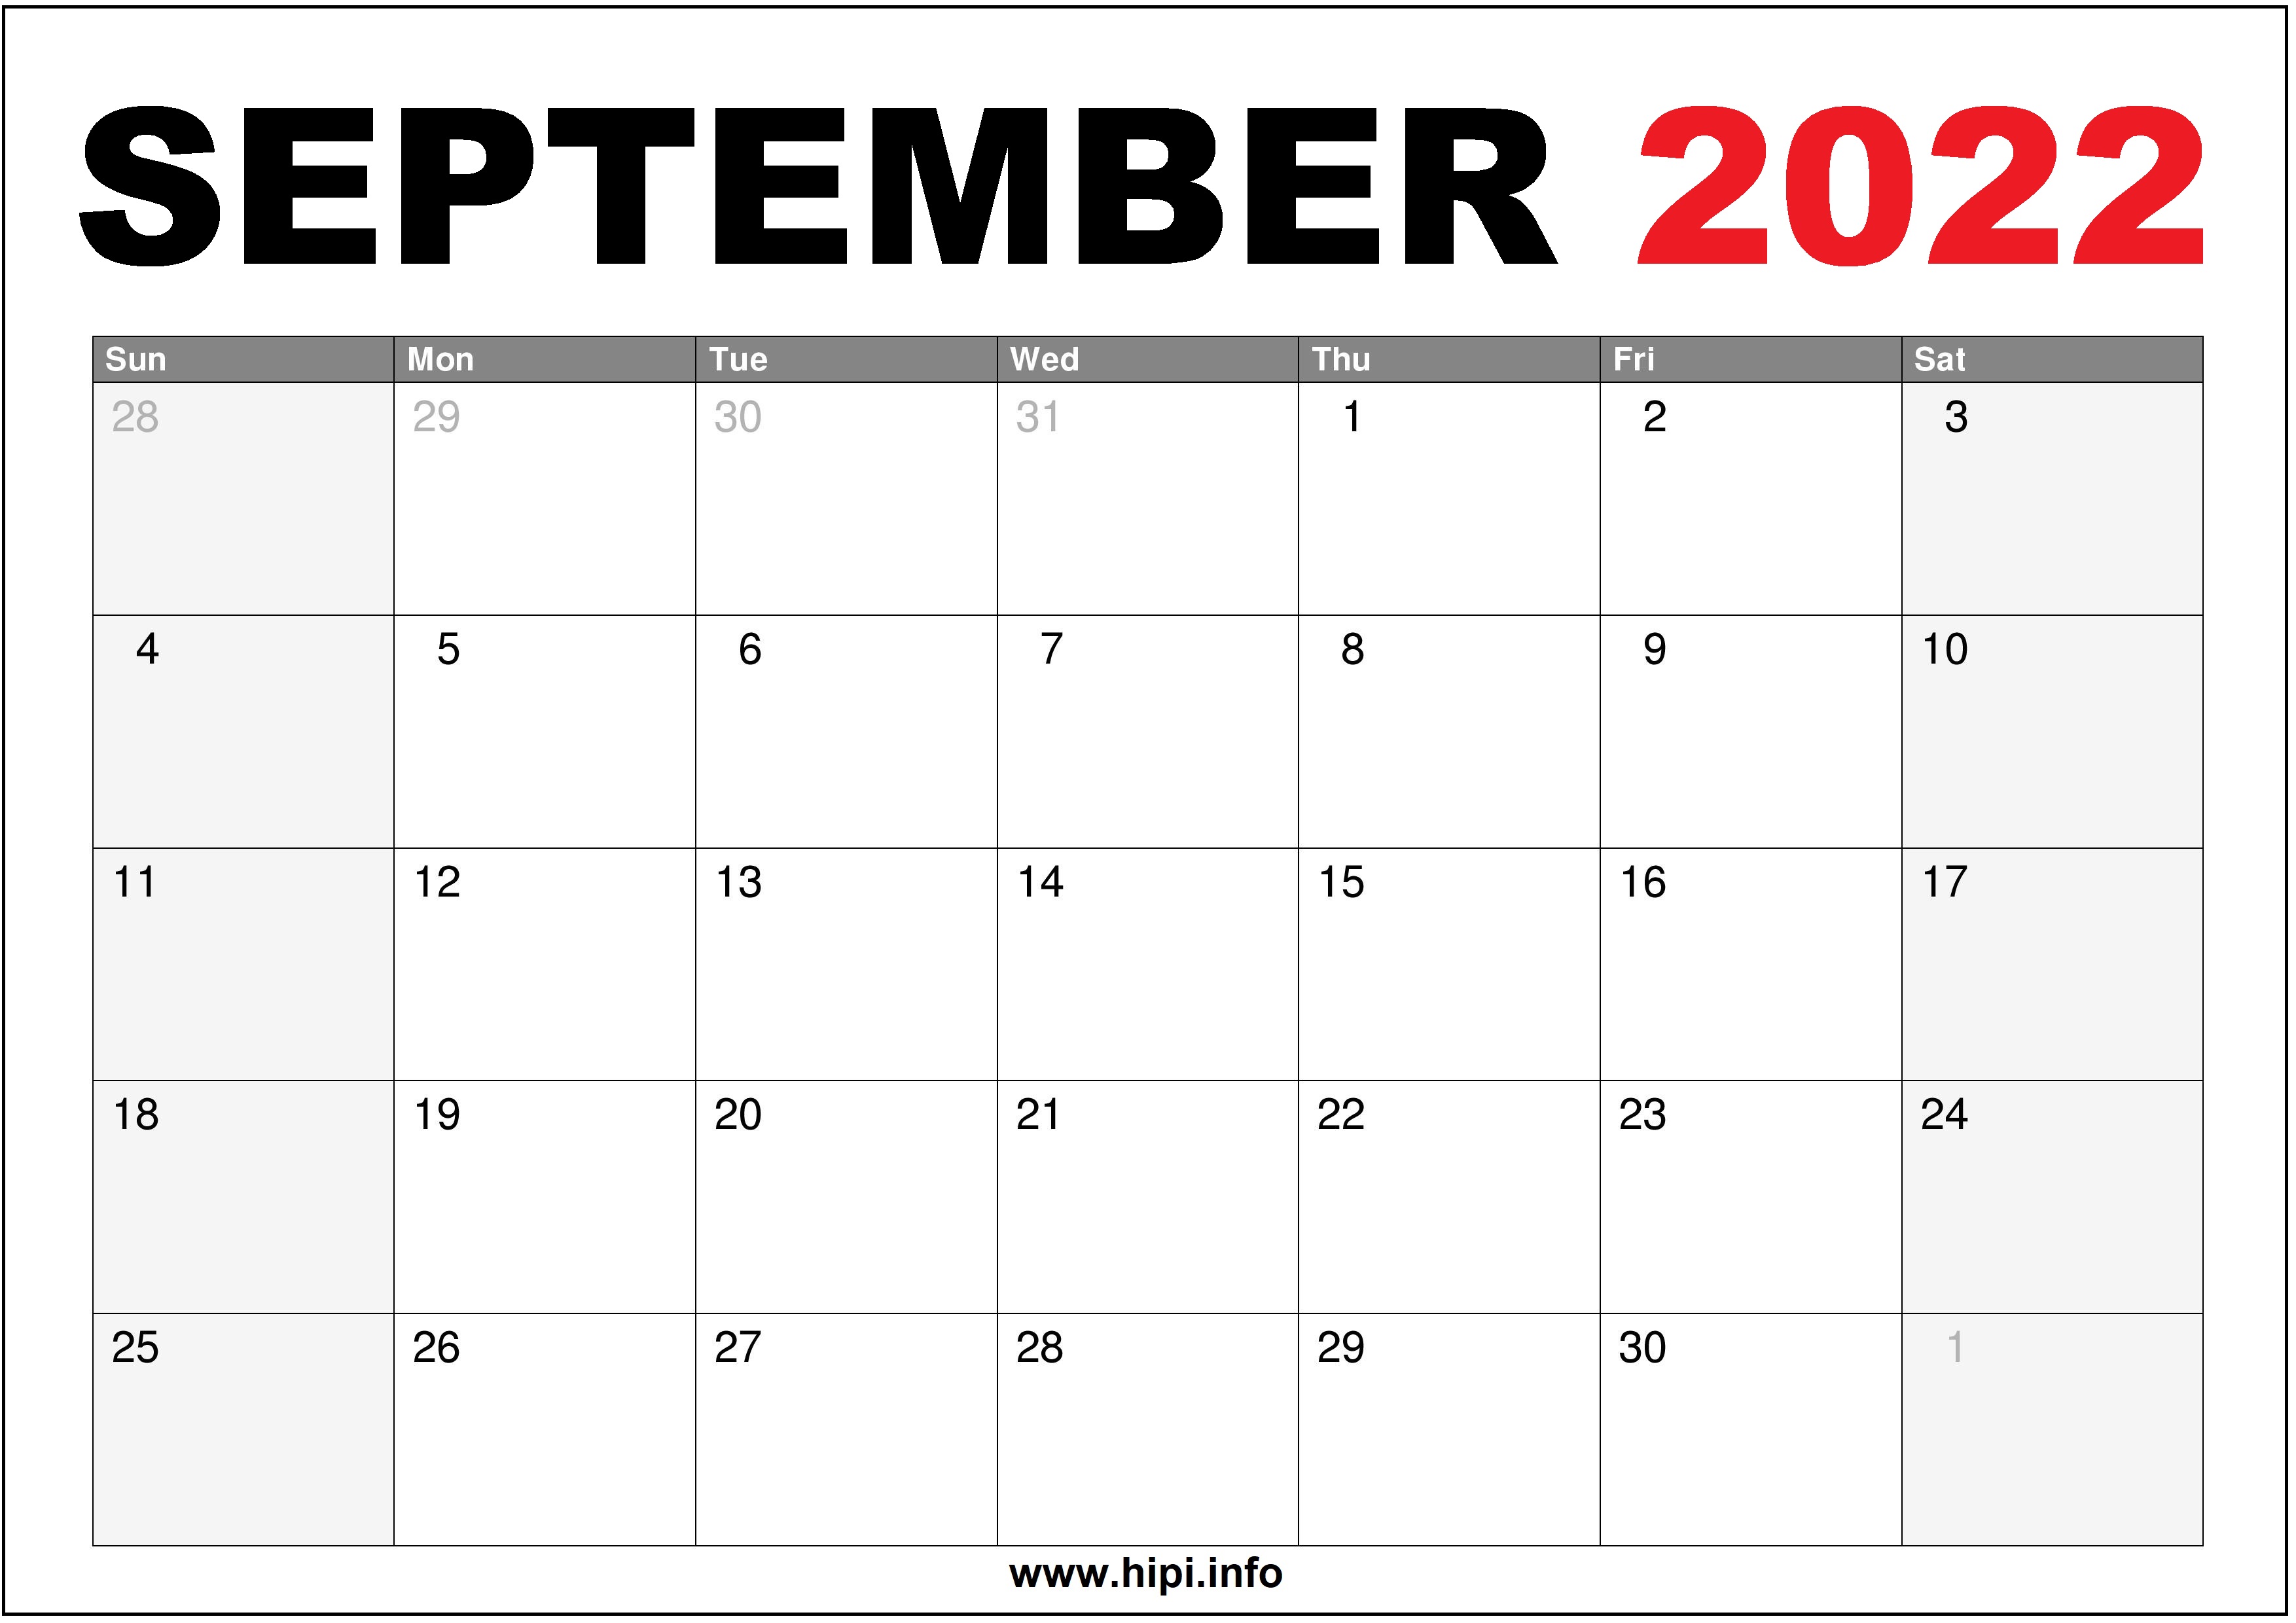 Calendar Template September 2022 Customize And Print